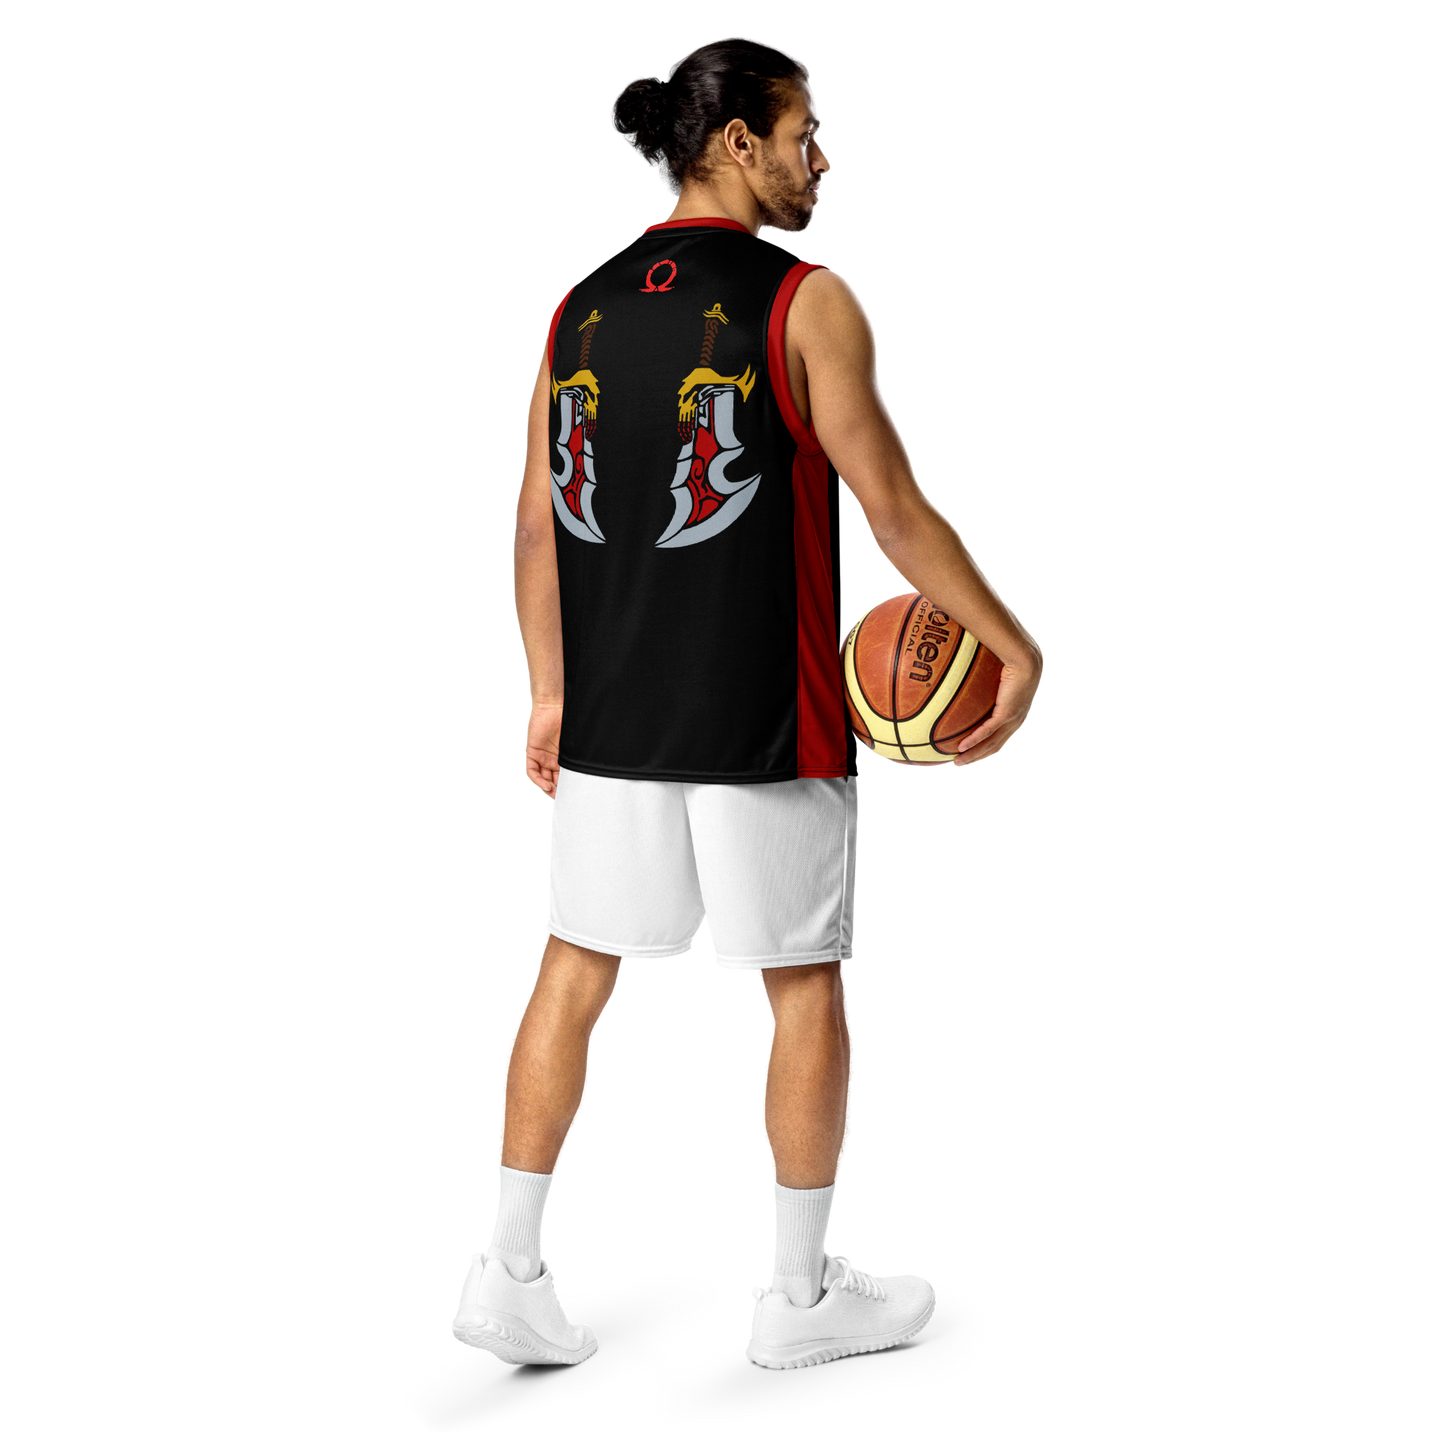 YSUG Olympus - Basketball Jersey